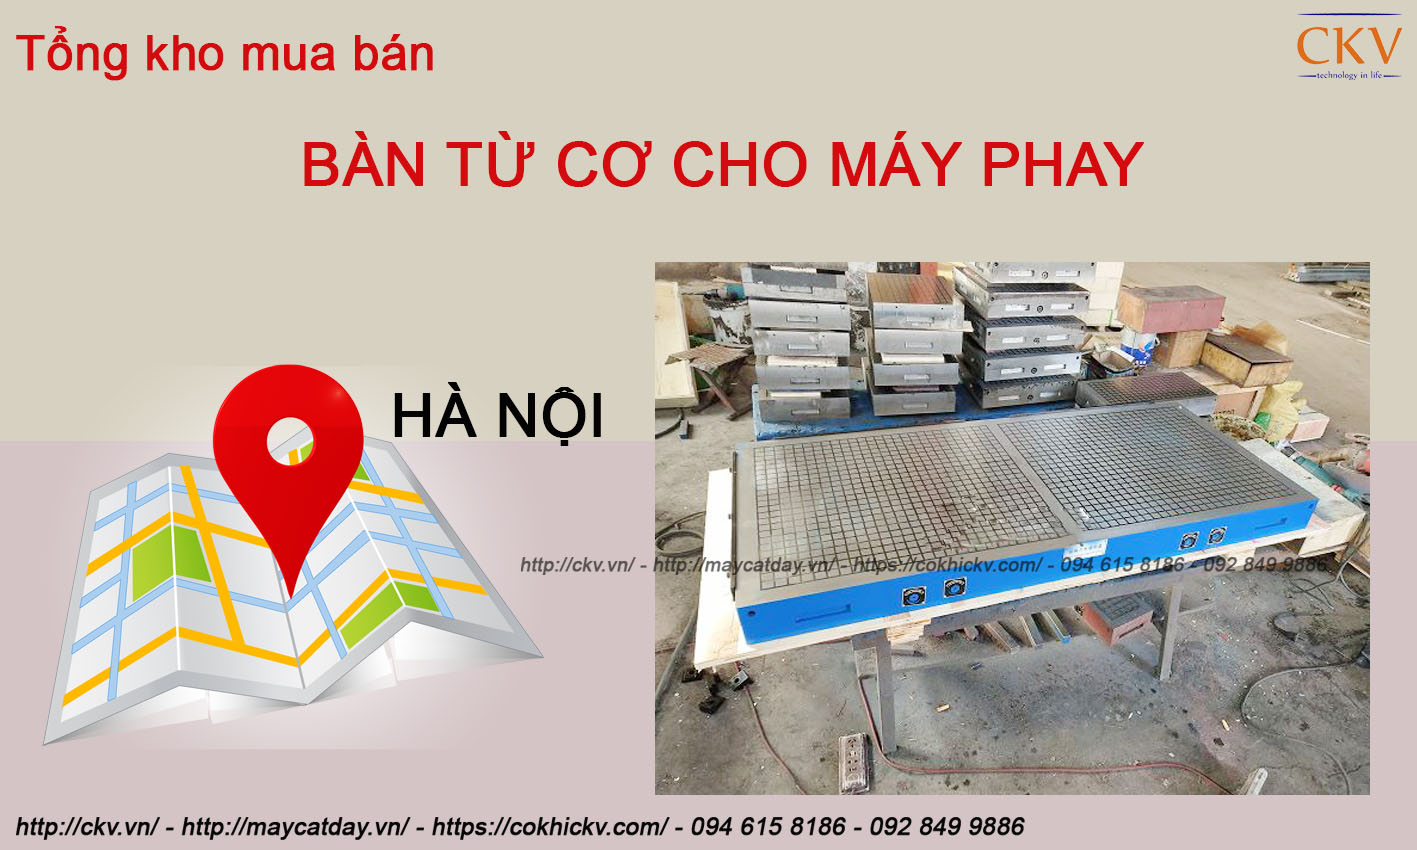 Tổng kho mua bán bàn từ cơ cho máy phay chính hãng giá tốt tại Hà Nội